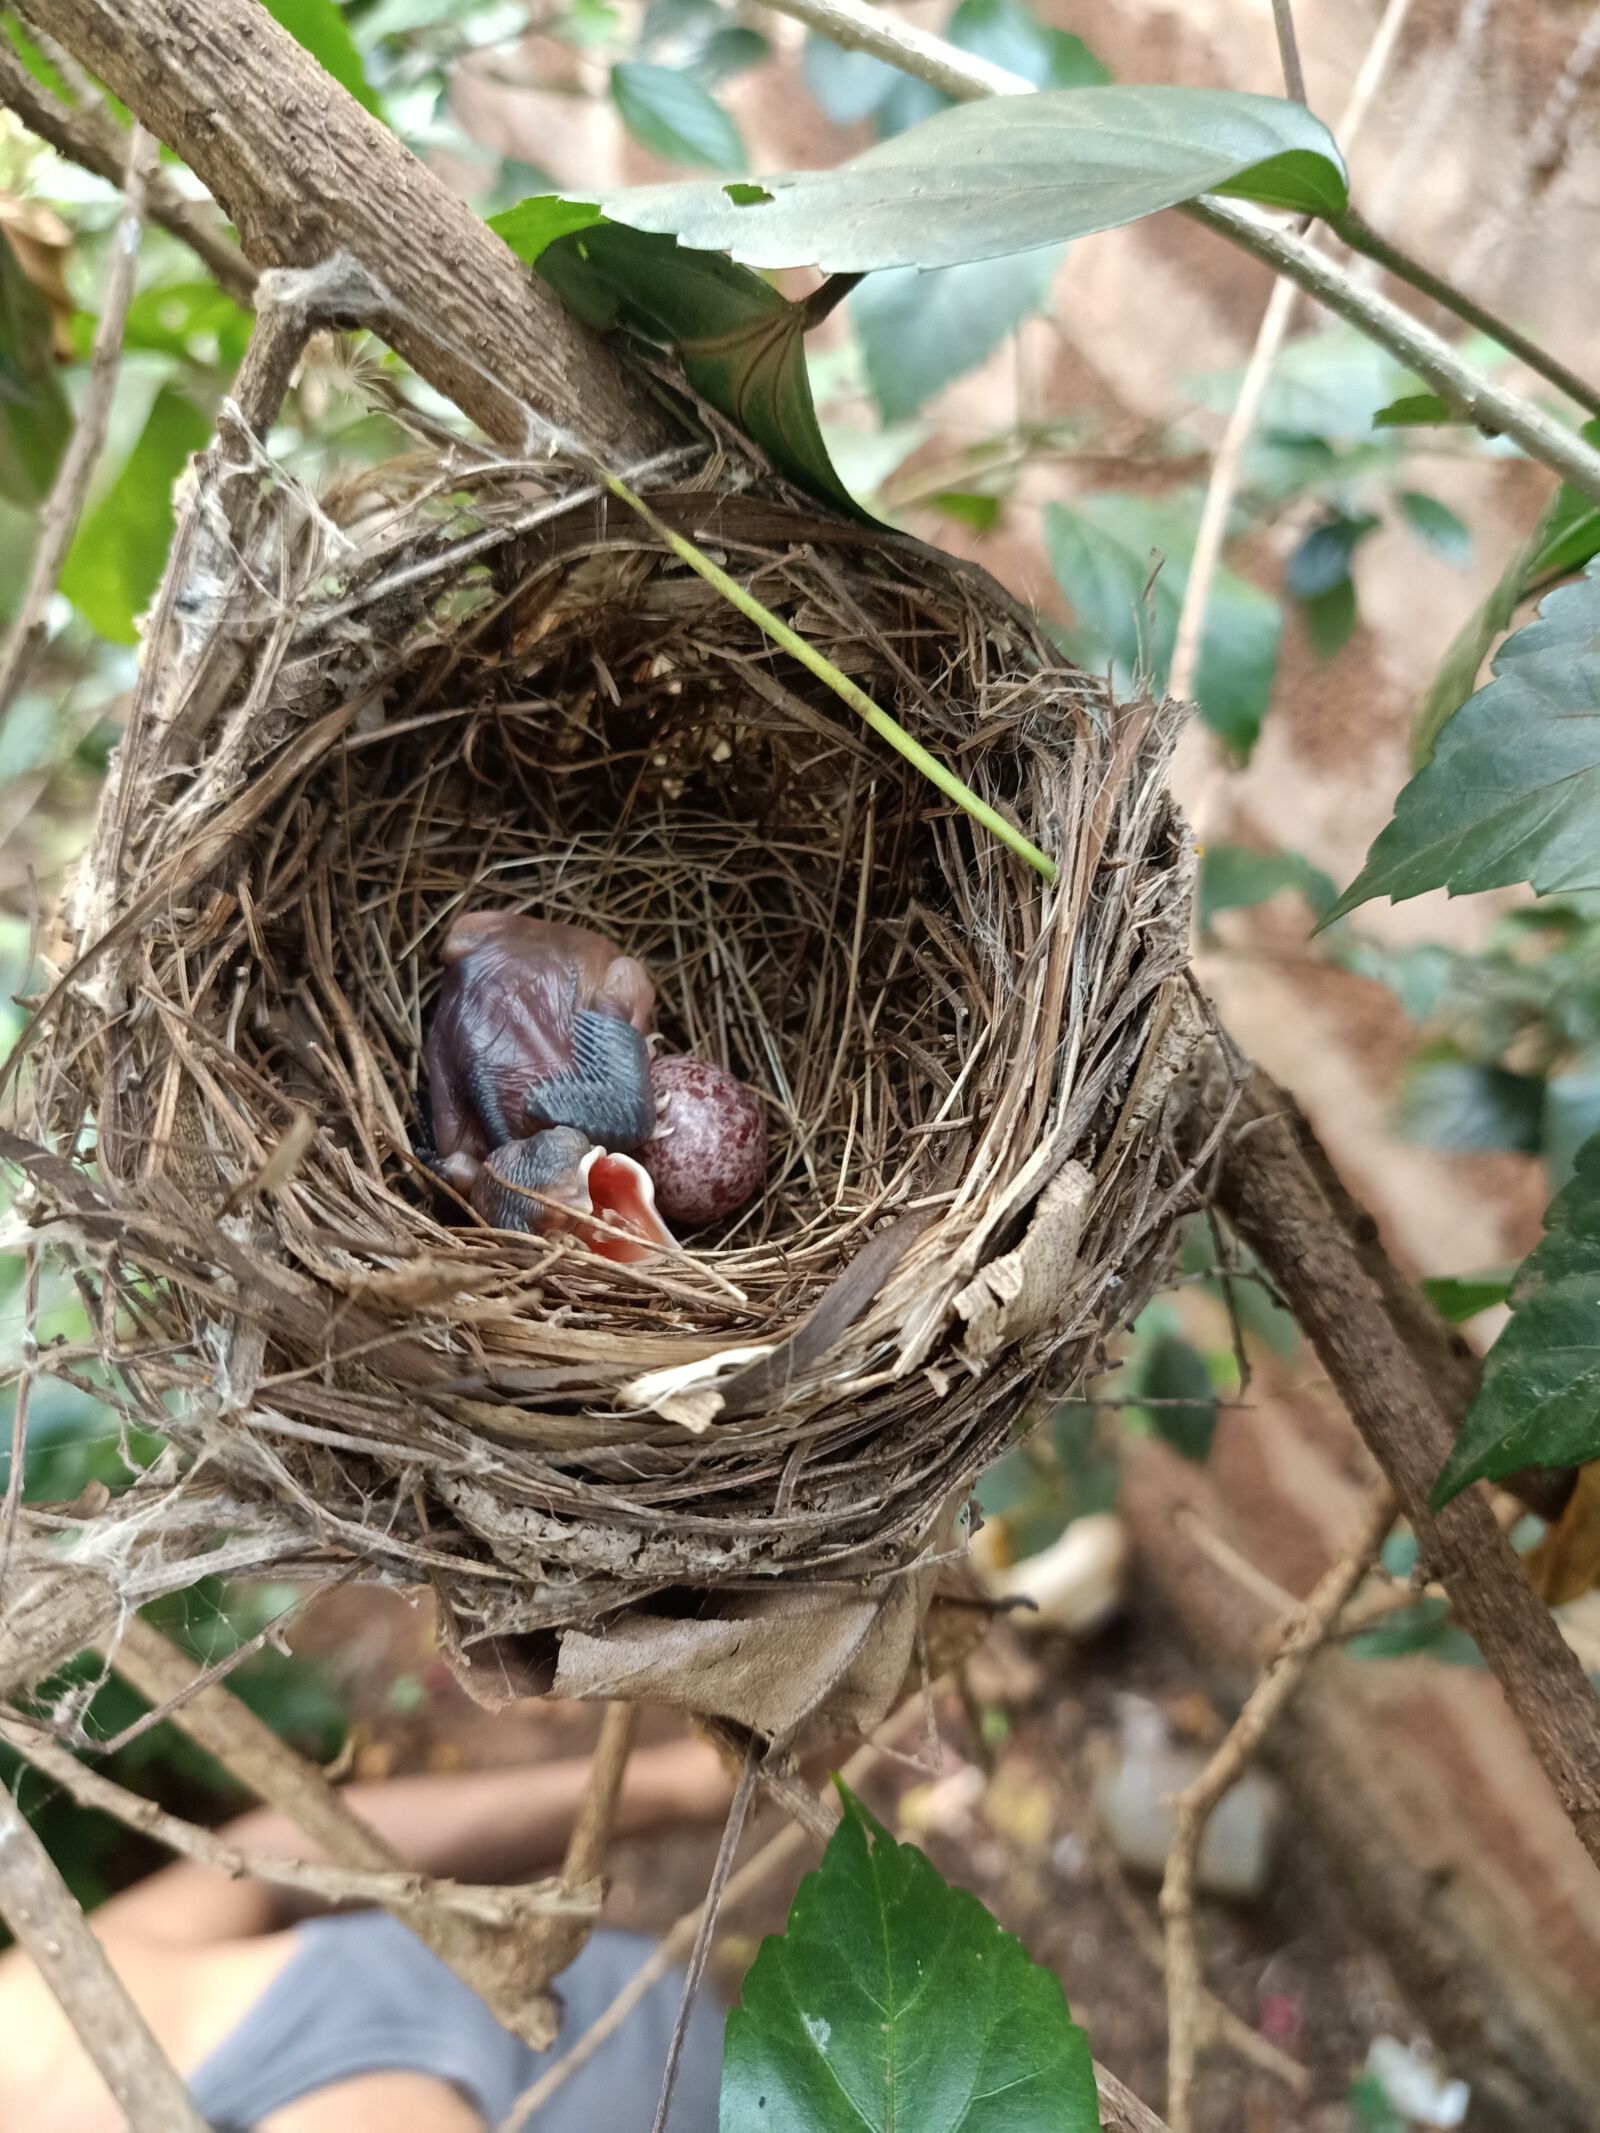 OPPO F11 sample photo. Nest, bird, egg photography